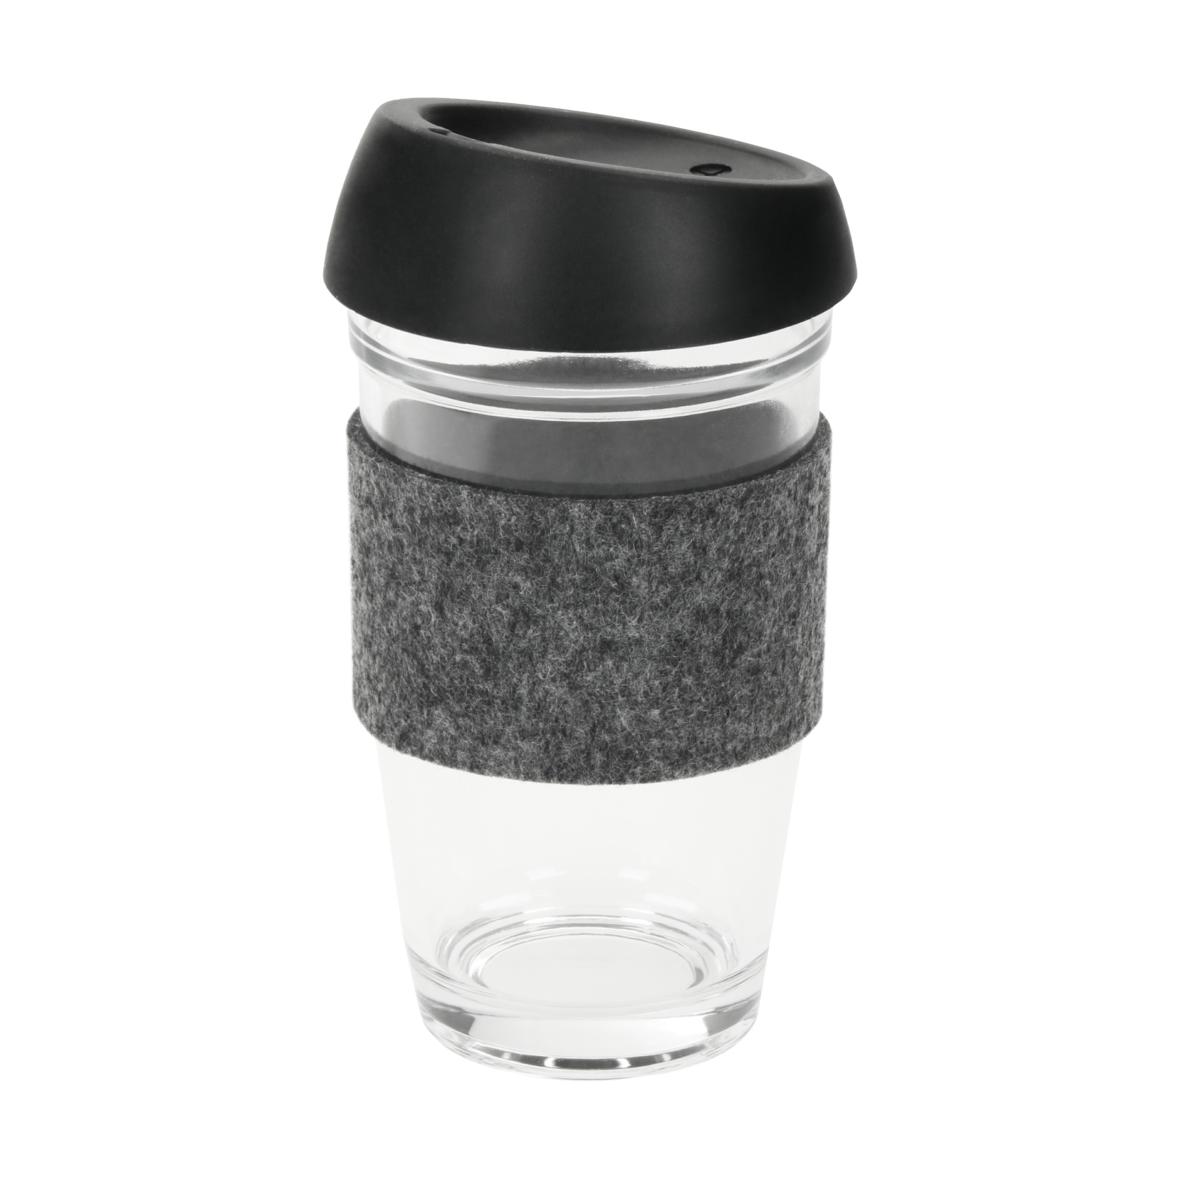 Tazza da caffè in vetro borosilicato con coperchio in silicone e manicotto in feltro - Maccastorna